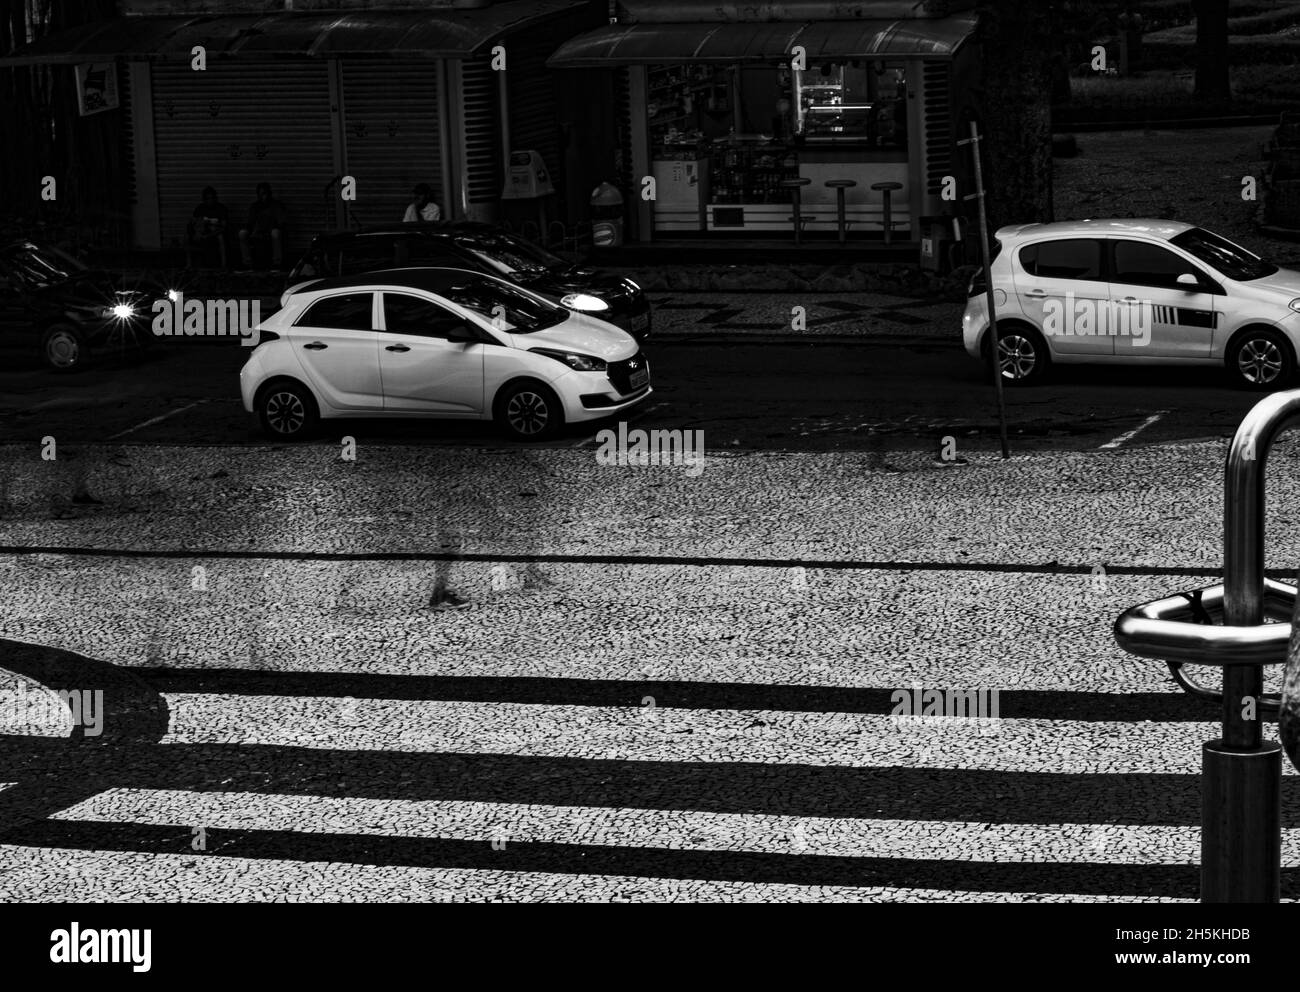 Graustufen-Aufnahme von Autos, die während des Regens durch die Straße fahren Stockfoto